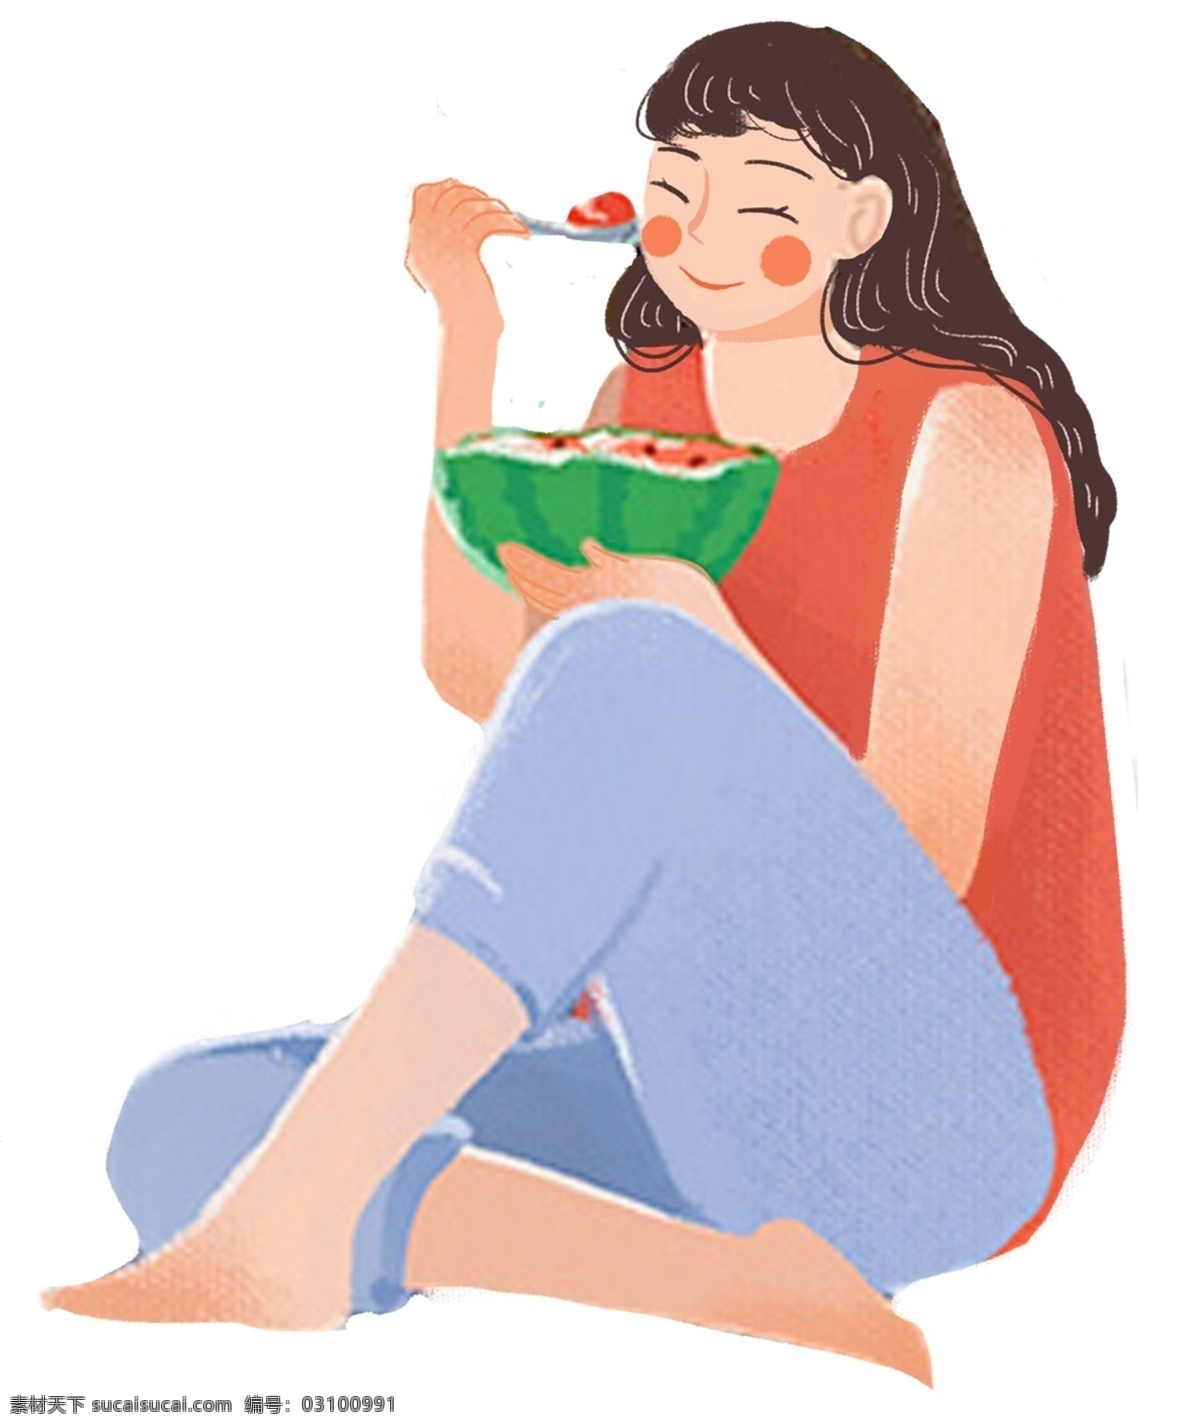 吃西瓜的女孩 吃 西瓜 女孩 卡通 人物